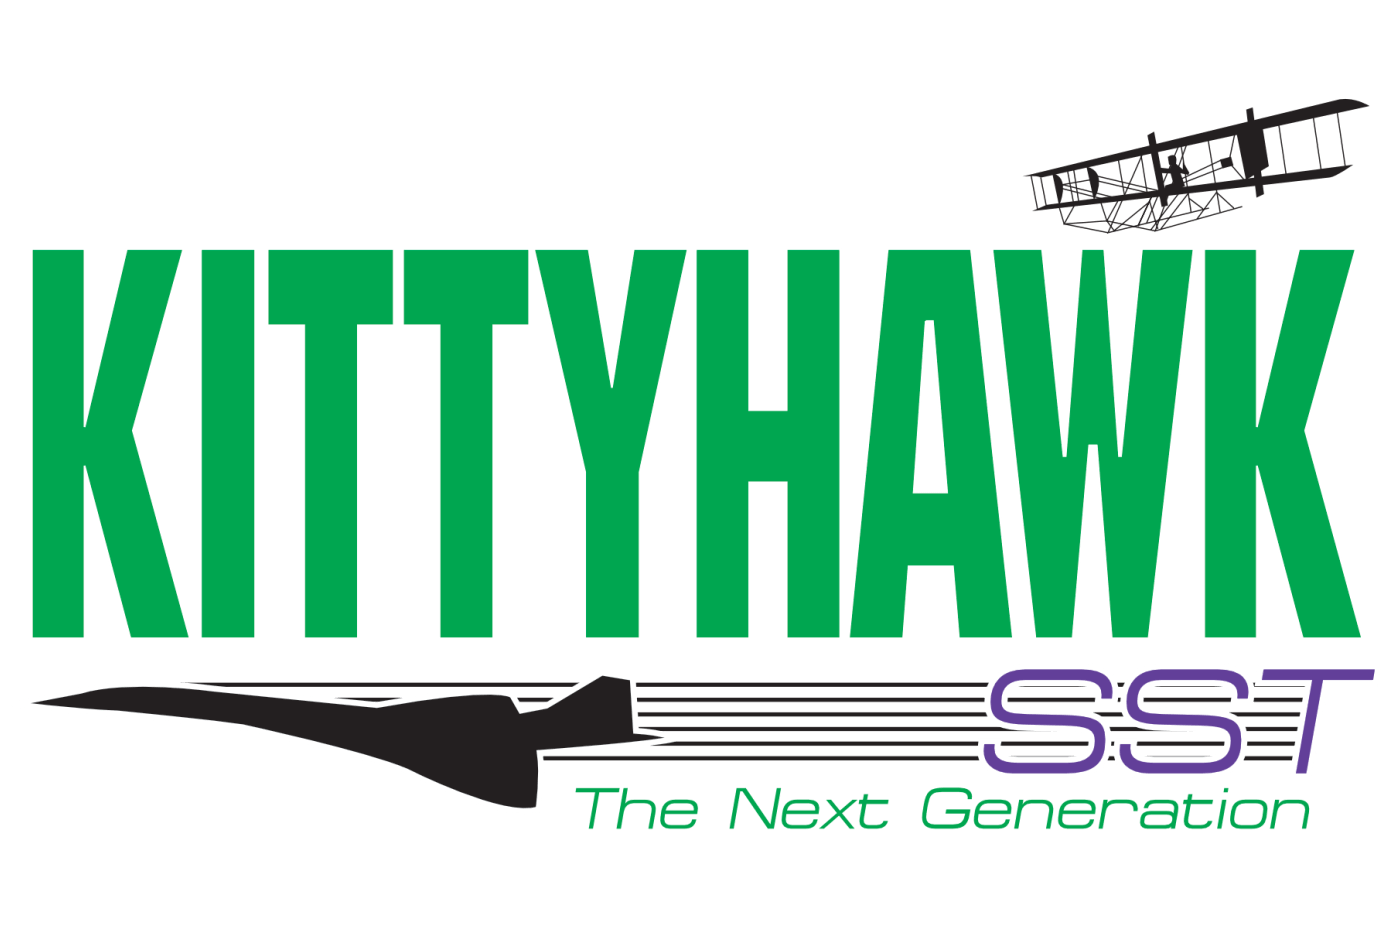 Kittyhawk SST logo